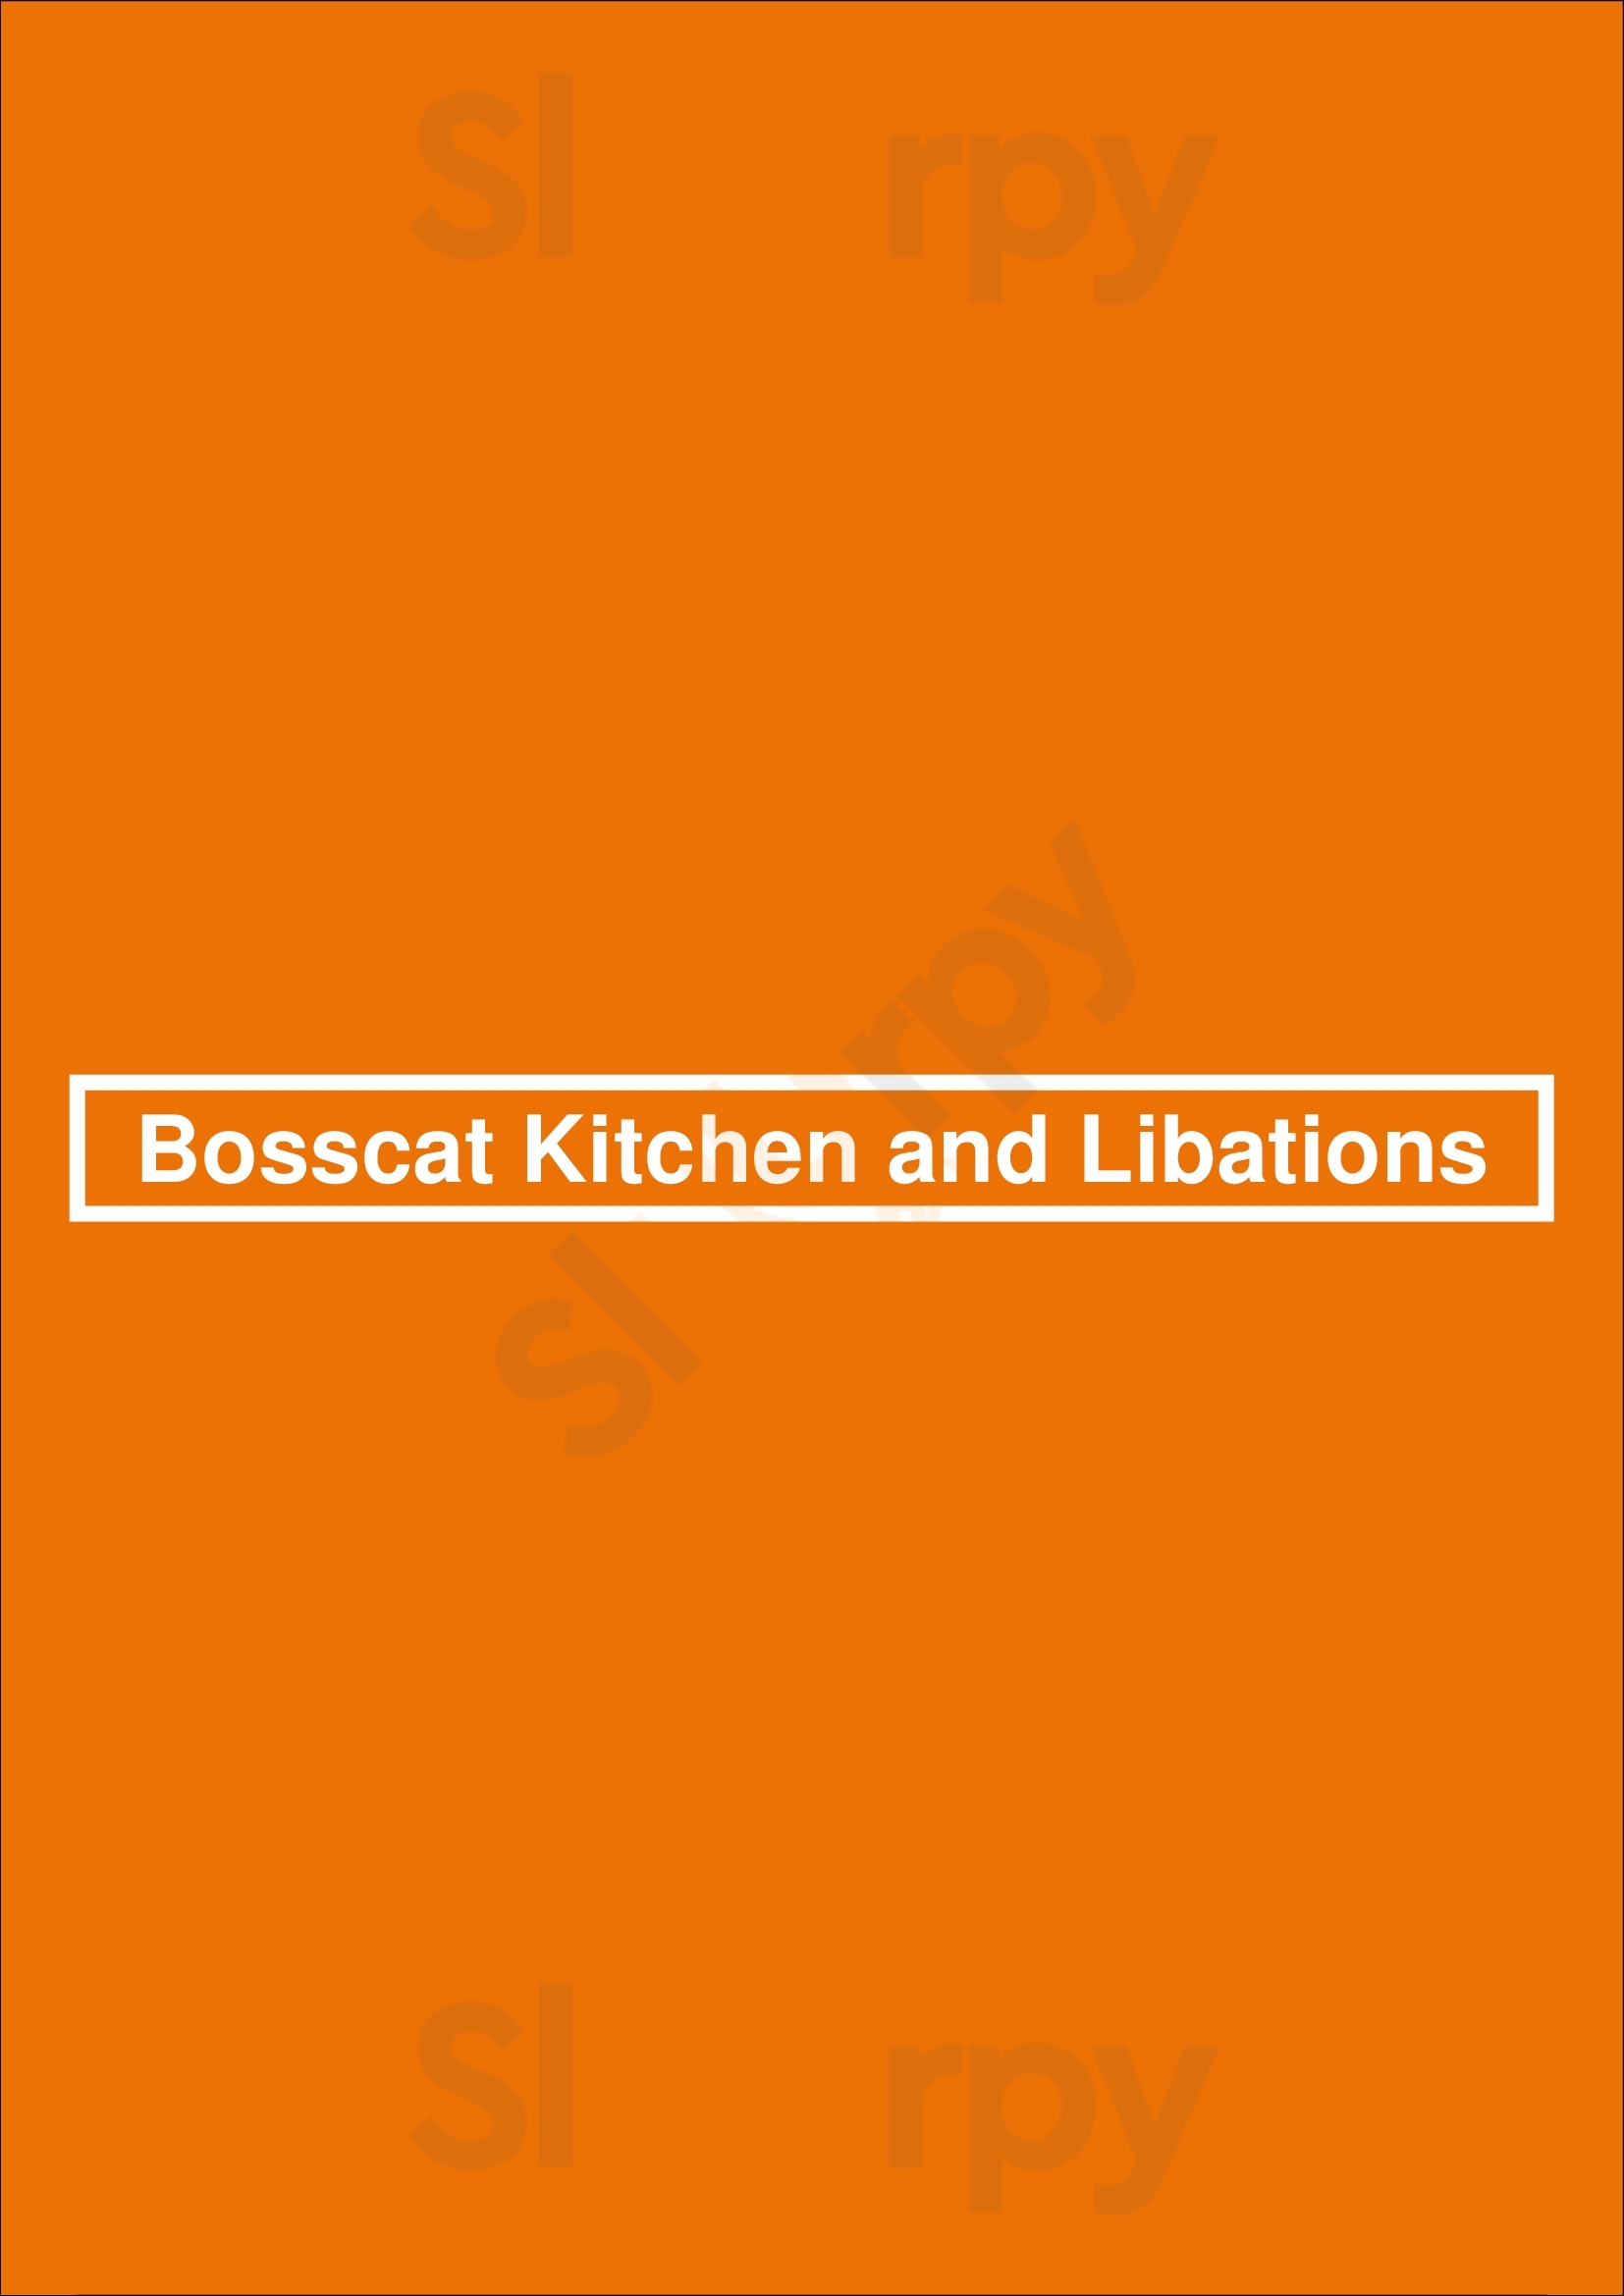 Bosscat Kitchen And Libations Newport Beach Menu - 1